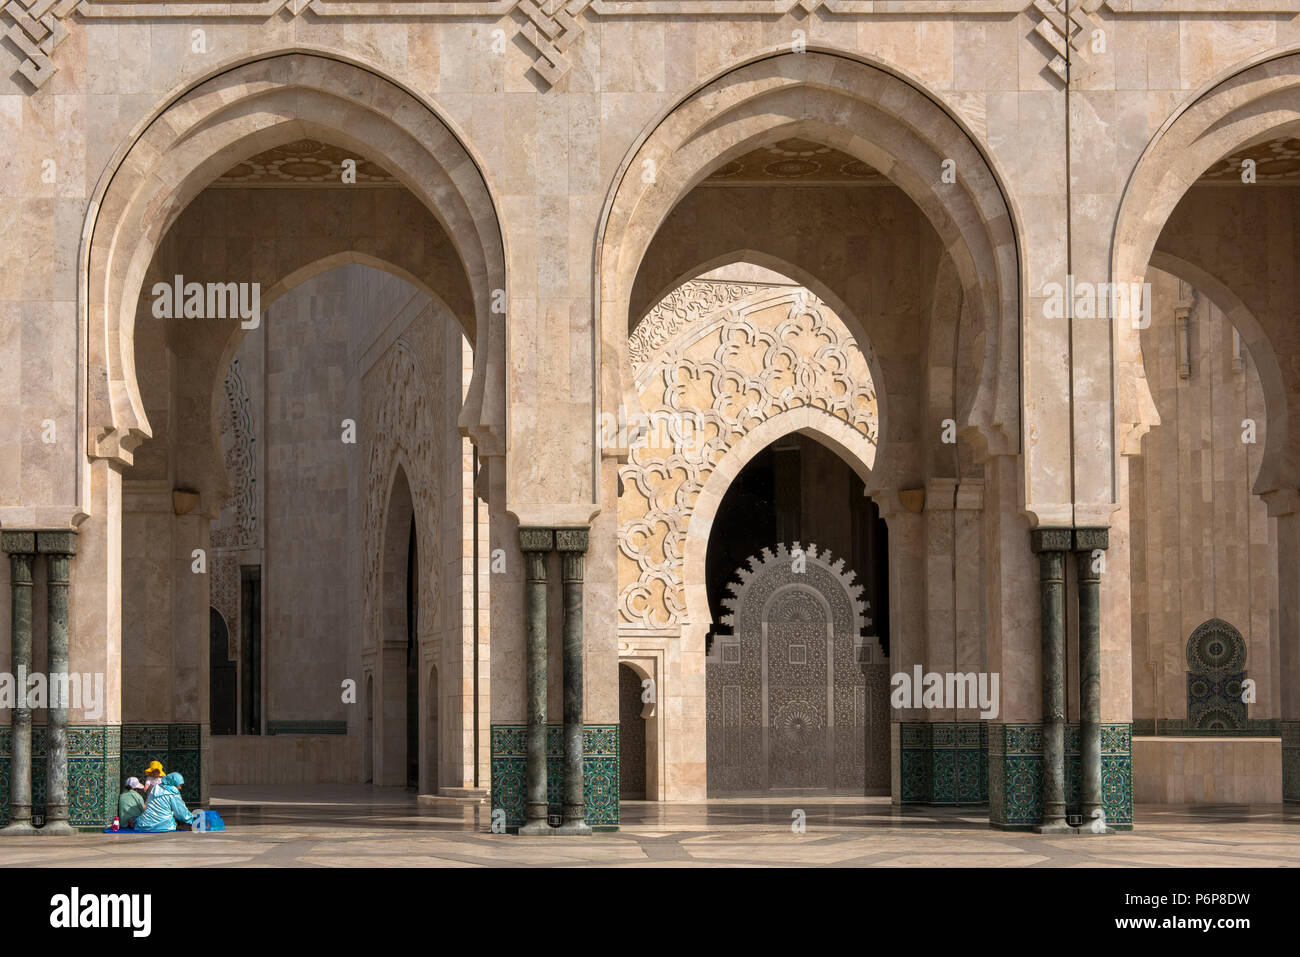 Famille installÃ©e pour une pause dominicale au piede la colonade du pÃ©ristyle de la MosquÃ©e Hassan II. Casablanca, Maroc. Stock Photo